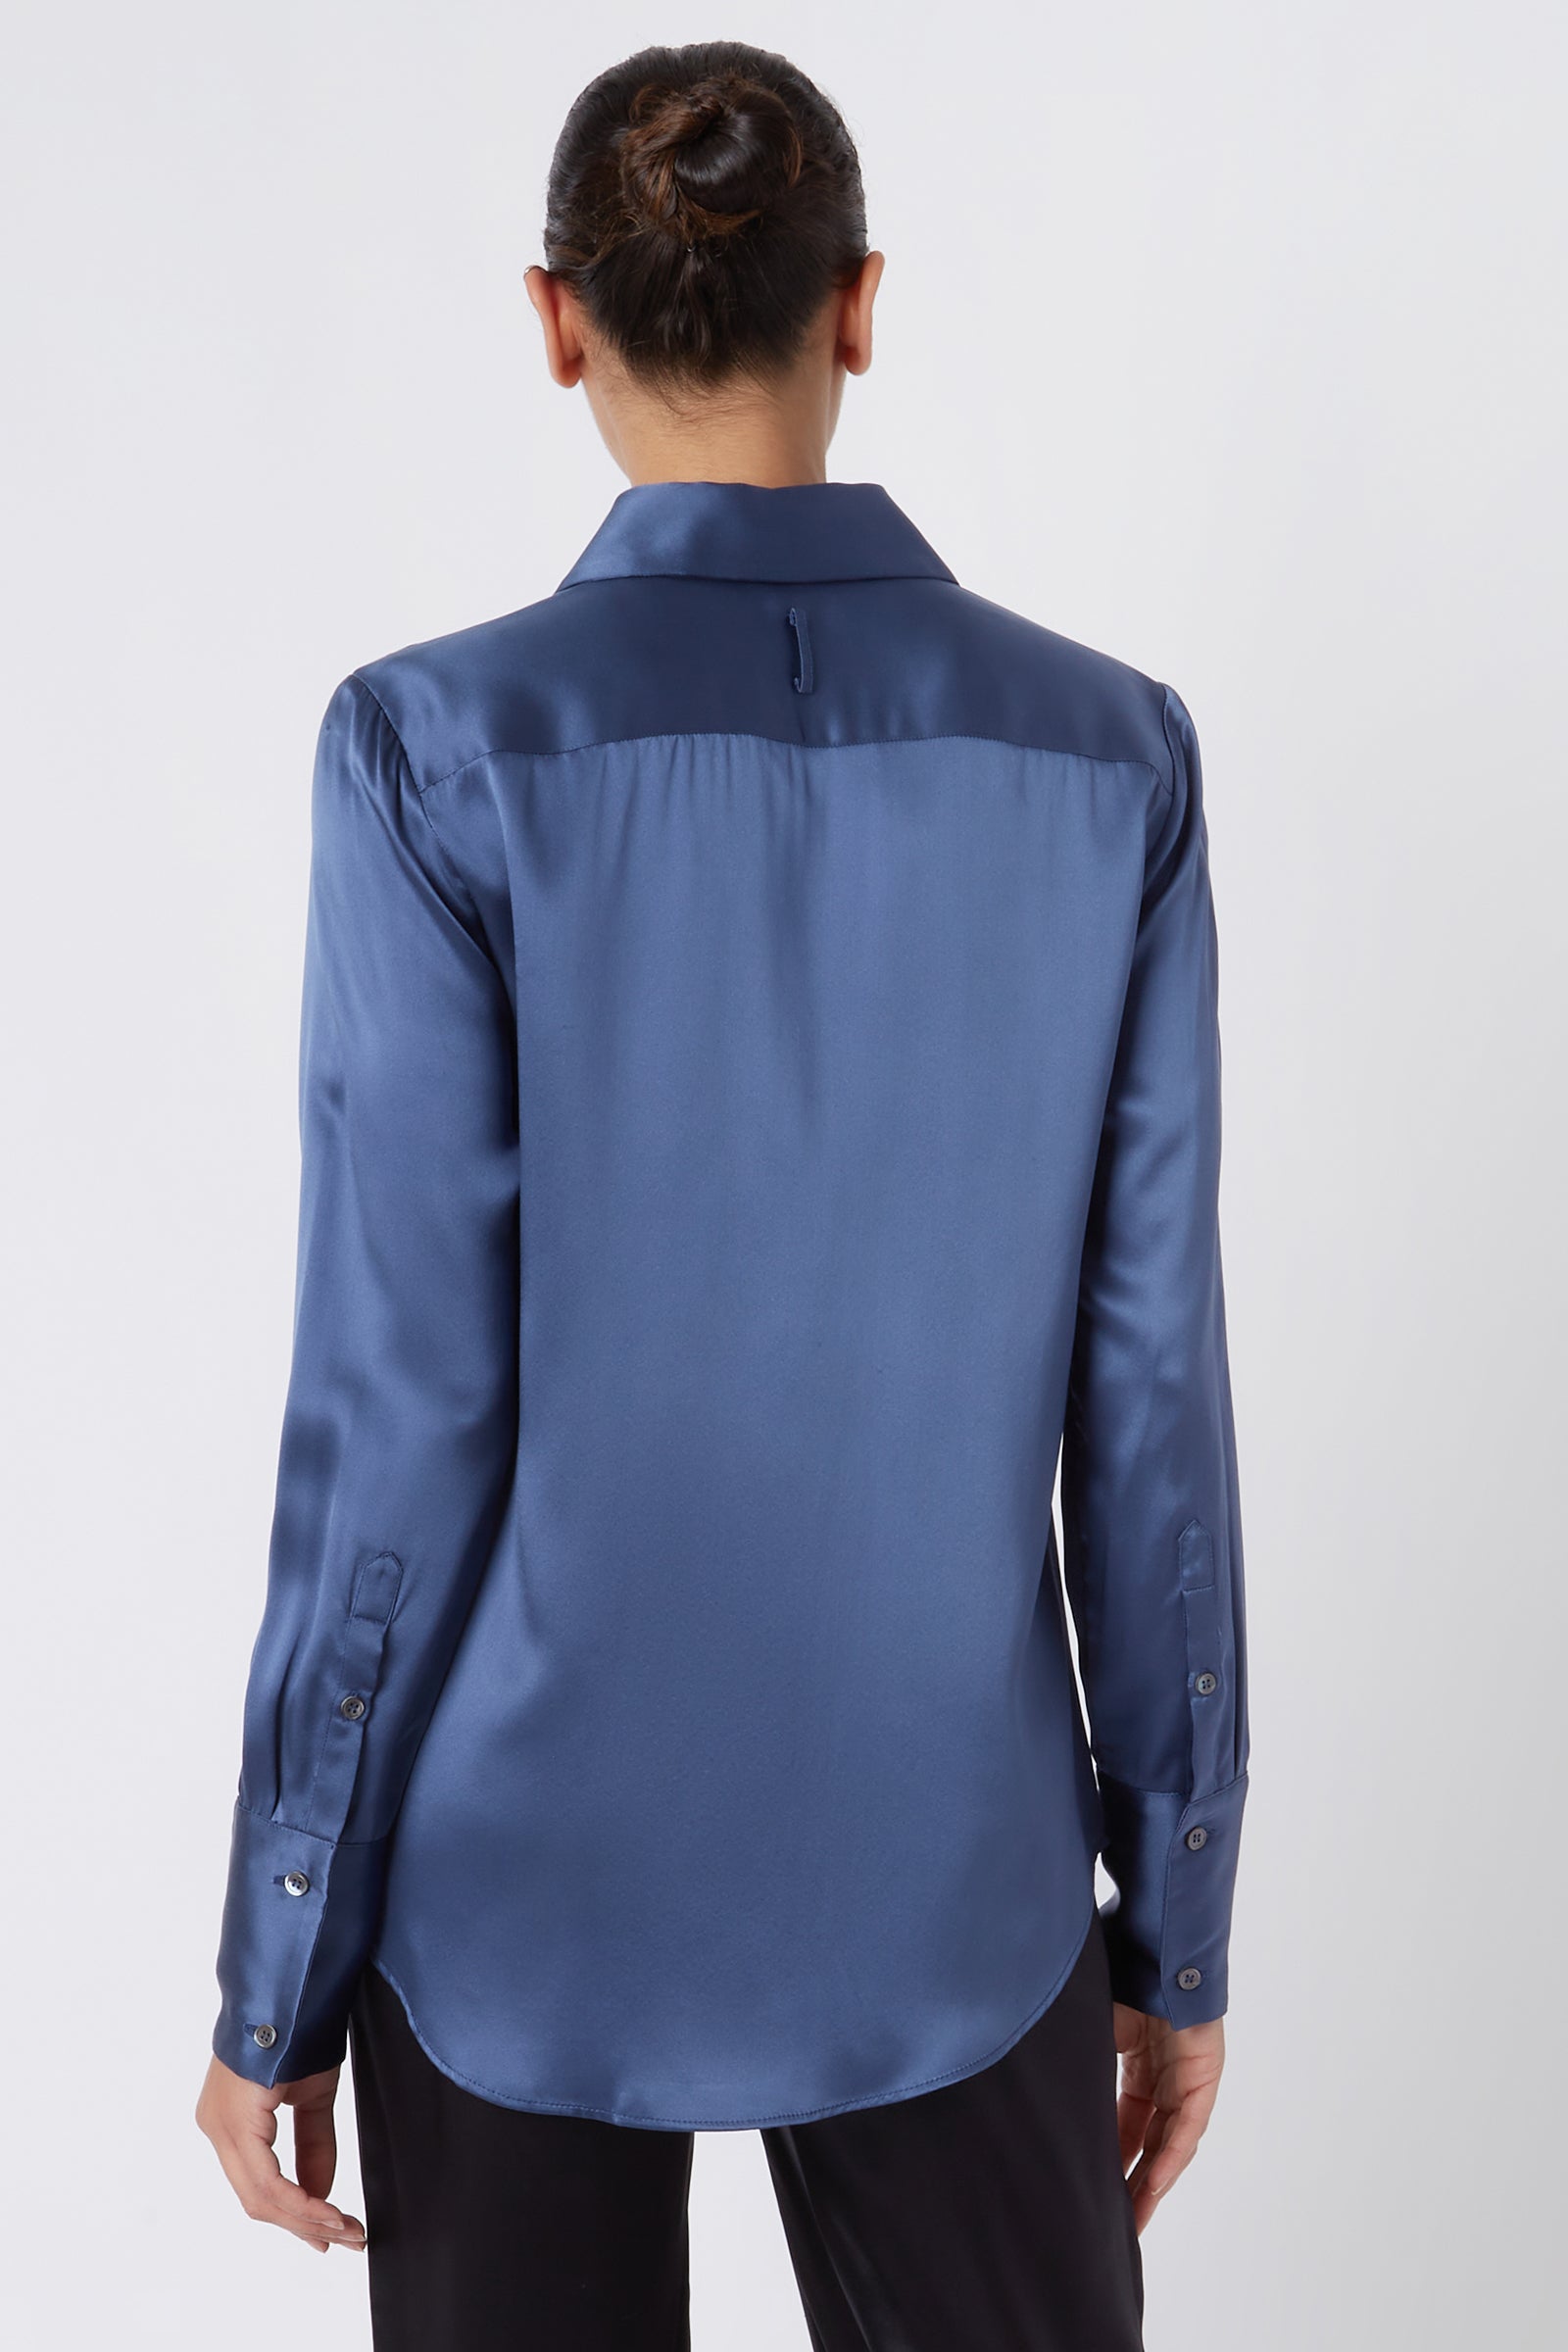 Classic buttoned blue silk shirt